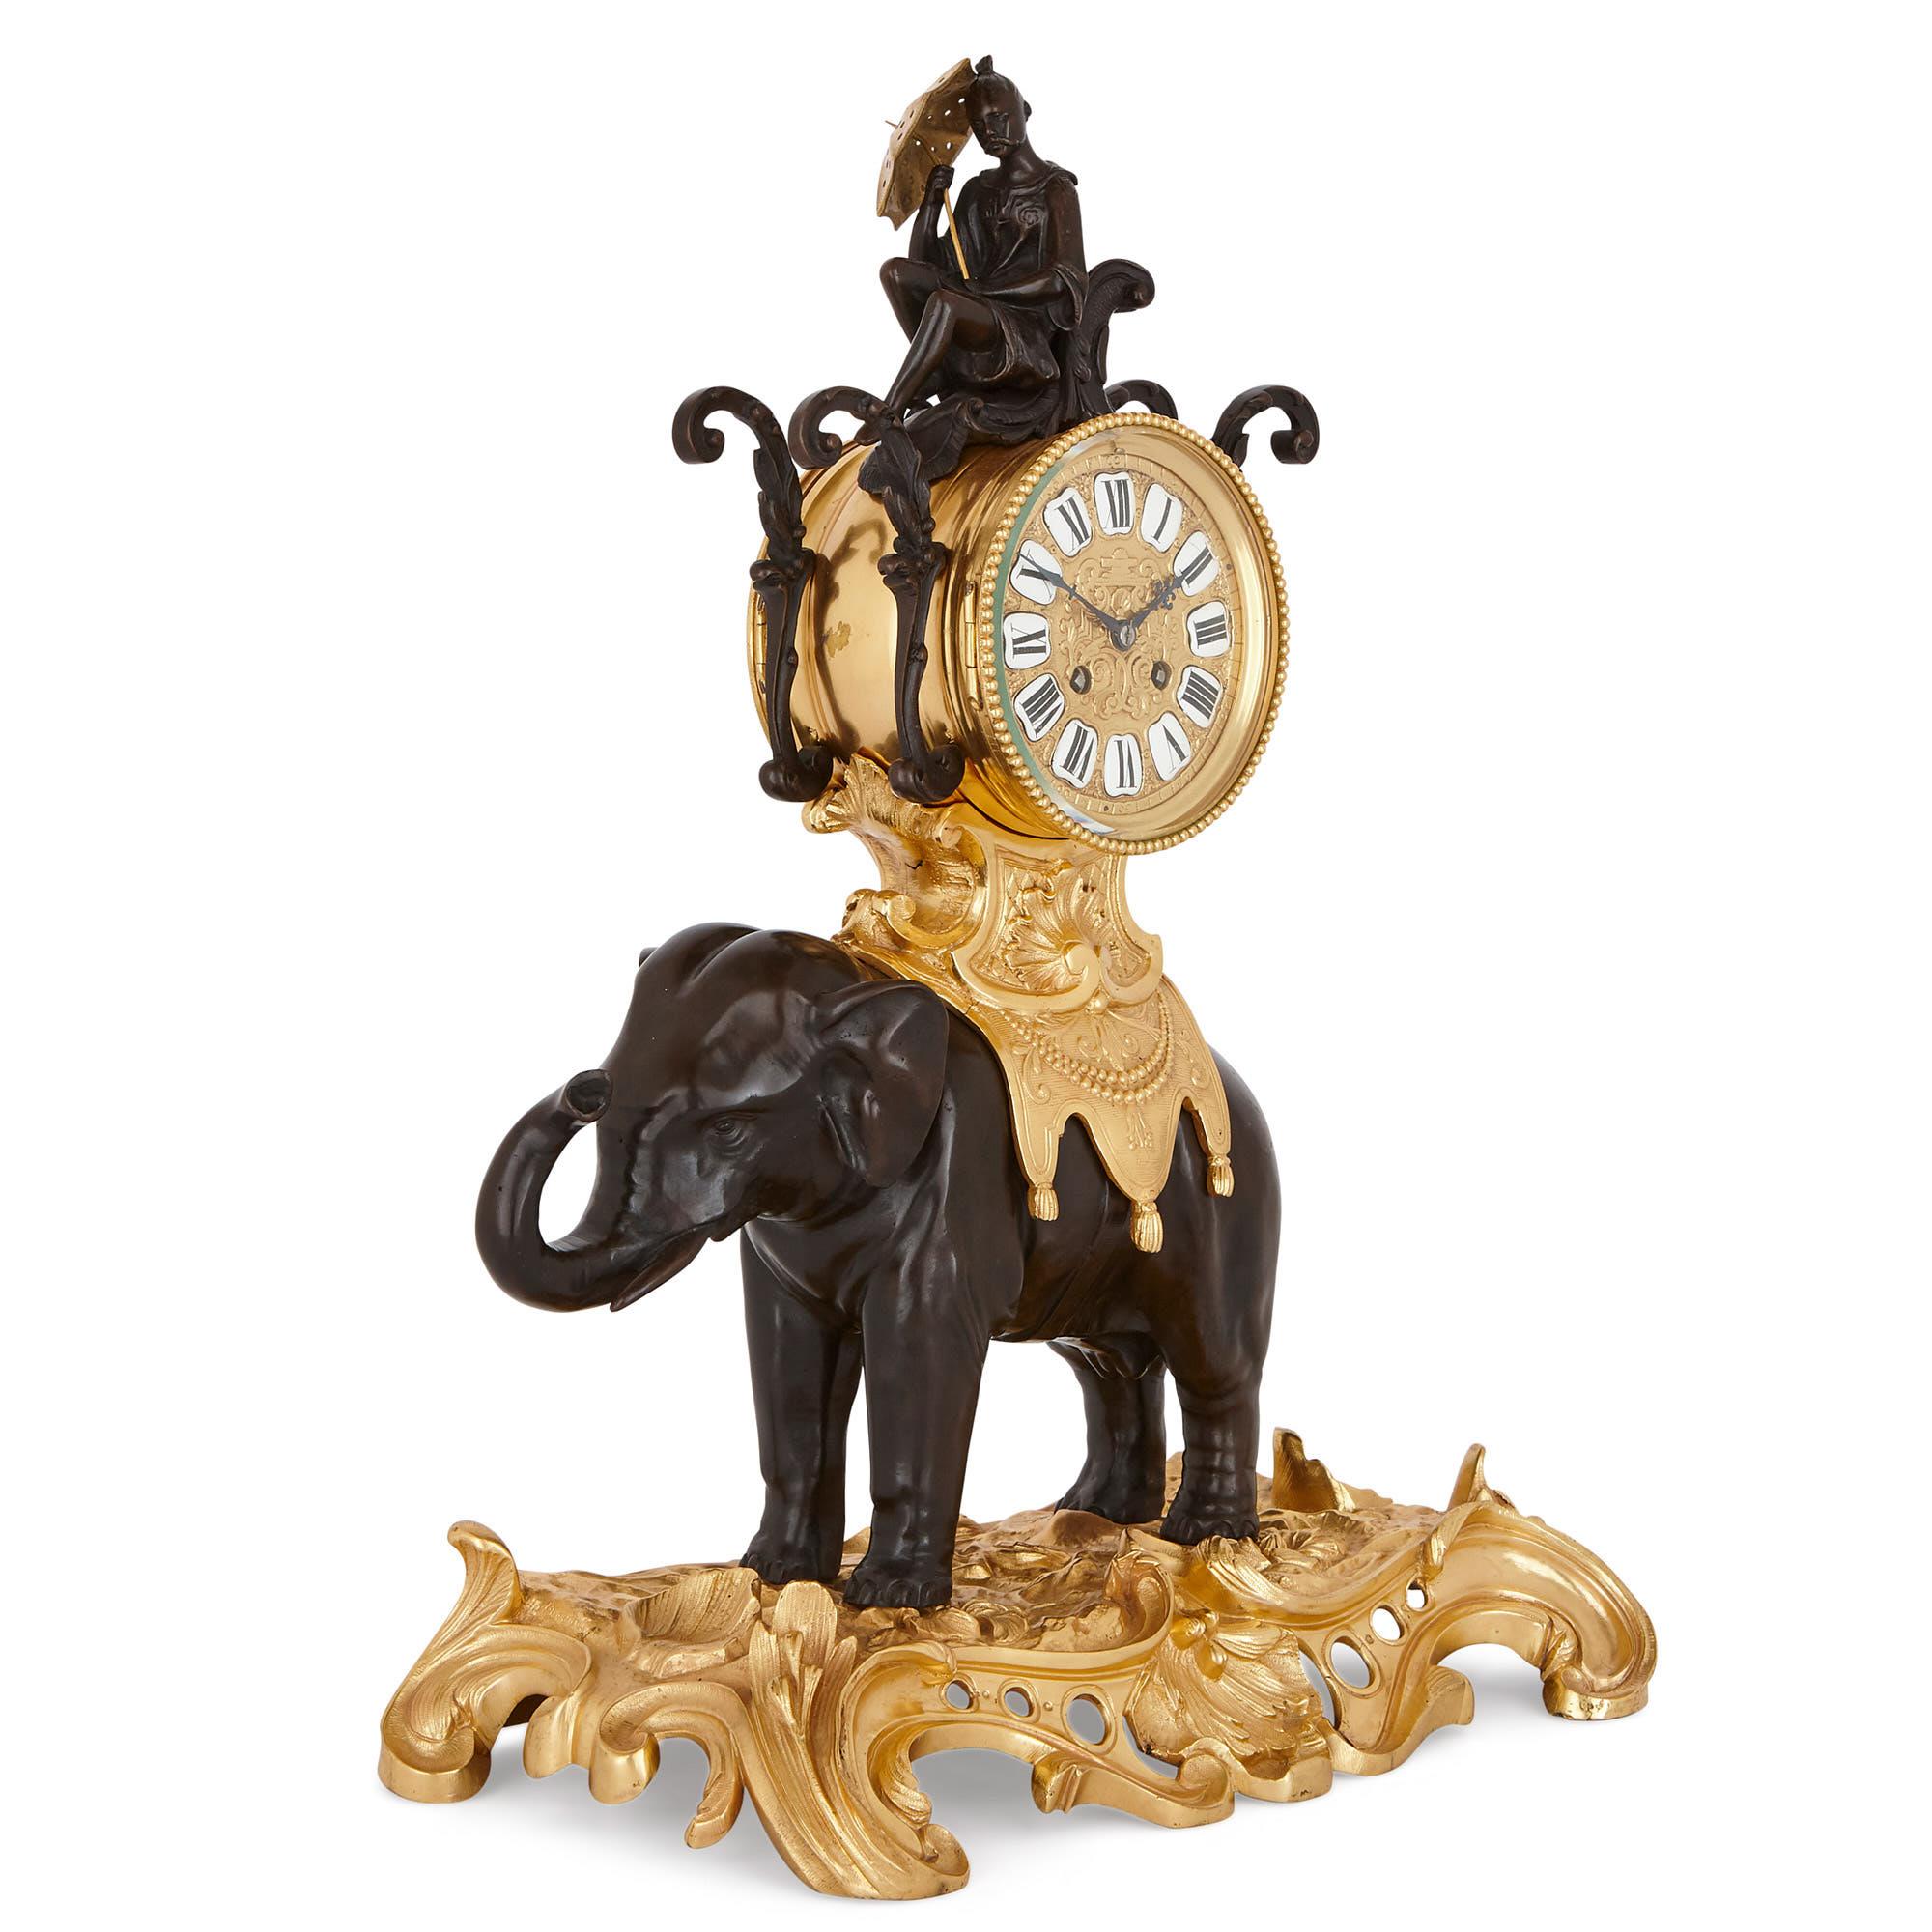 Conçue dans un style Louis XV fantaisiste, cette belle horloge de cheminée prend la forme d'un éléphant d'Asie, sellé d'un howdah (carrosse). L'horloge présente une sculpture patinée d'un homme chinois, assis sur une chaise, au-dessus d'un cadran en